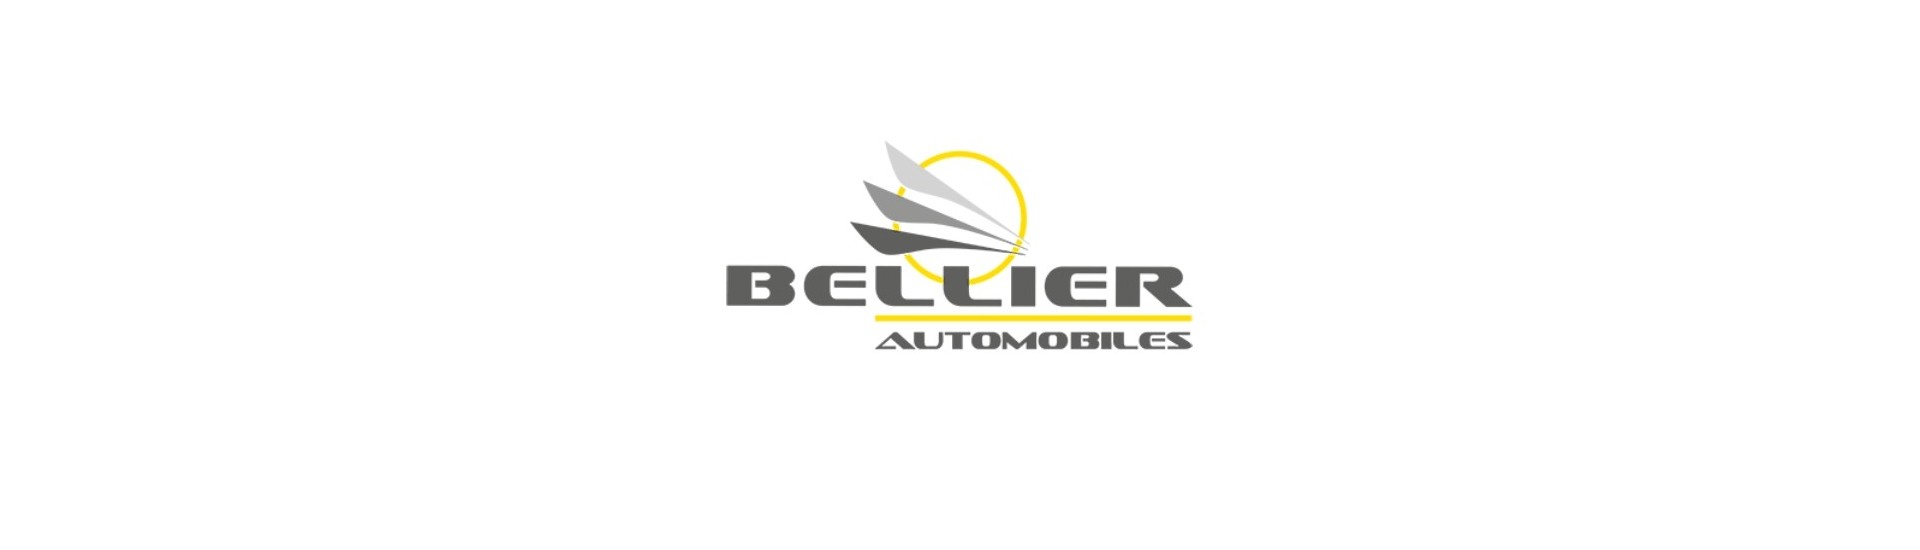 Avgasuttag till bästa pris för en bil utan körkort Bellier